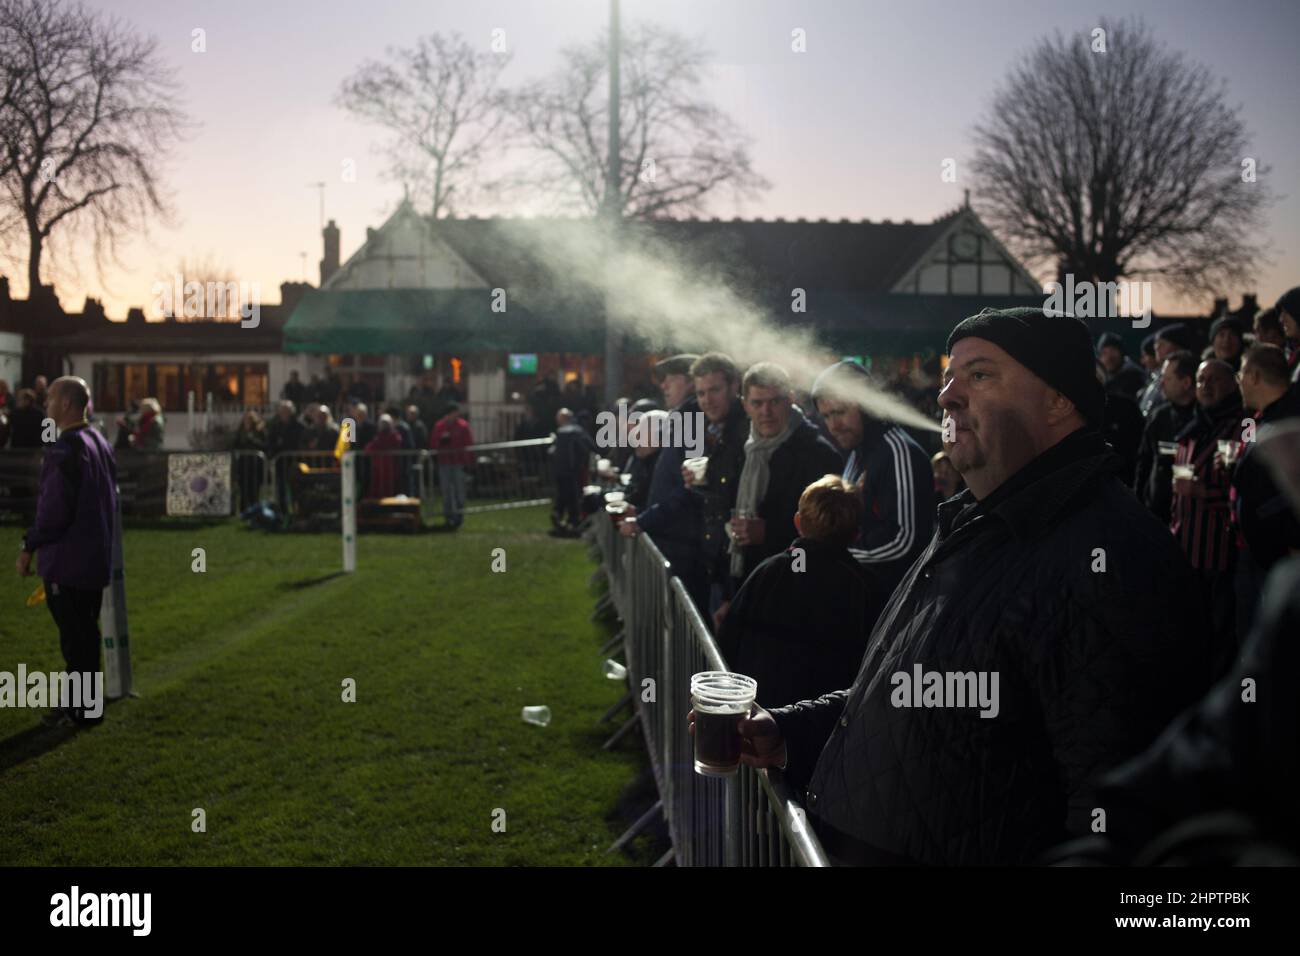 Die Menge, die ein Spiel zwischen Blackheath und Coventry beobachtet. Blackheath im Süden Londons behauptet, der älteste Rugby-Club der Welt zu sein. Stockfoto